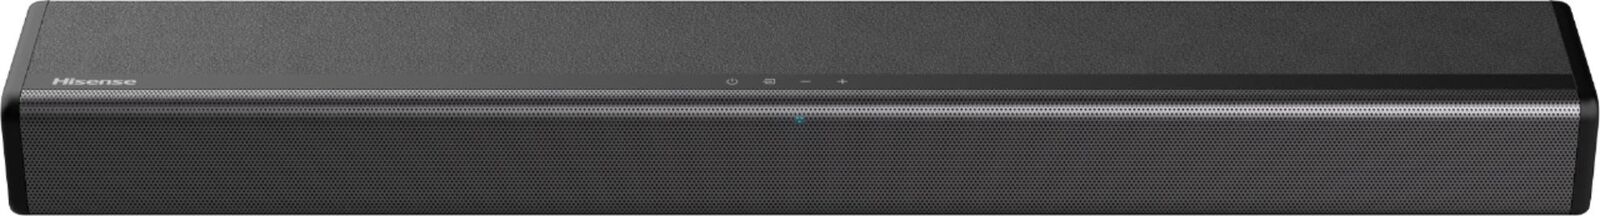 Hisense - 2.1-Channel Soundbar with Built-in Subwoofer - Black